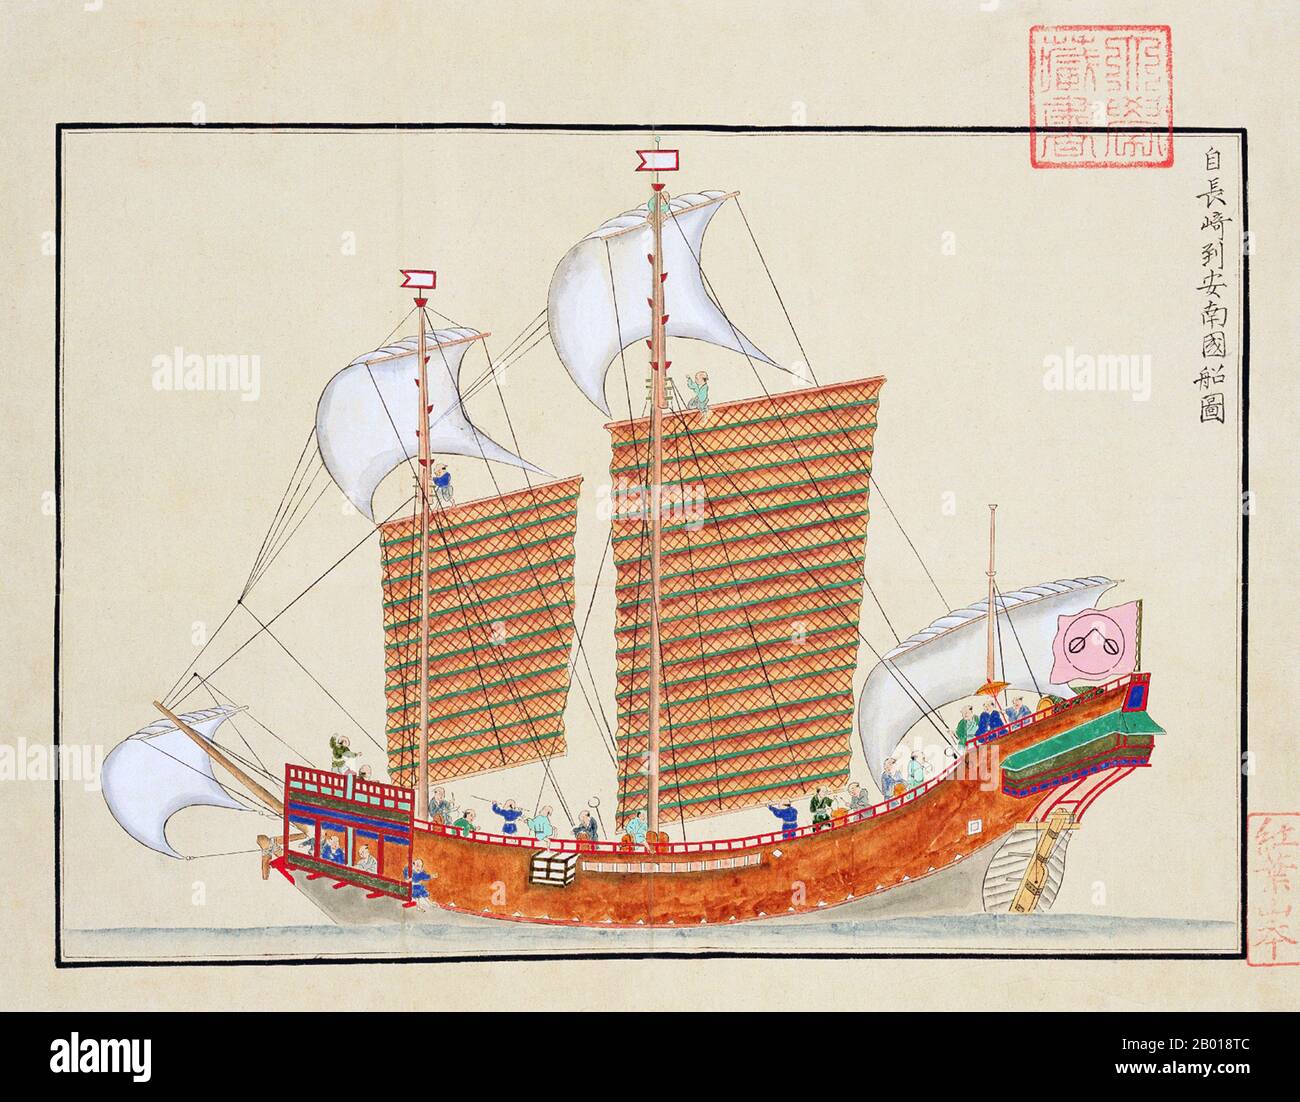 Giappone: Una nave del 17th secolo del sigillo rosso della famiglia commerciale di Araki, che commercia da Nagasaki ad Annam (Vietnam). Dipinto del 'gaiban shokan', redatto da Kondo Seisai (1771-1829), c.. 1790. Il 'gaiban shokan' è stato preparato come un lavoro di riferimento per 'Gaiban Tsusho', la compilazione di documenti diplomatici dello shogunato Tokugawa, preparato da Kondo Seisai, che ha servito come magistrato di Nagasaki e magistrato di libri e dischi. Contiene copie di documenti diplomatici, tra cui 33 certificati impressi con il sigillo dello shogun per i viaggi all'estero ufficialmente autorizzati. Foto Stock